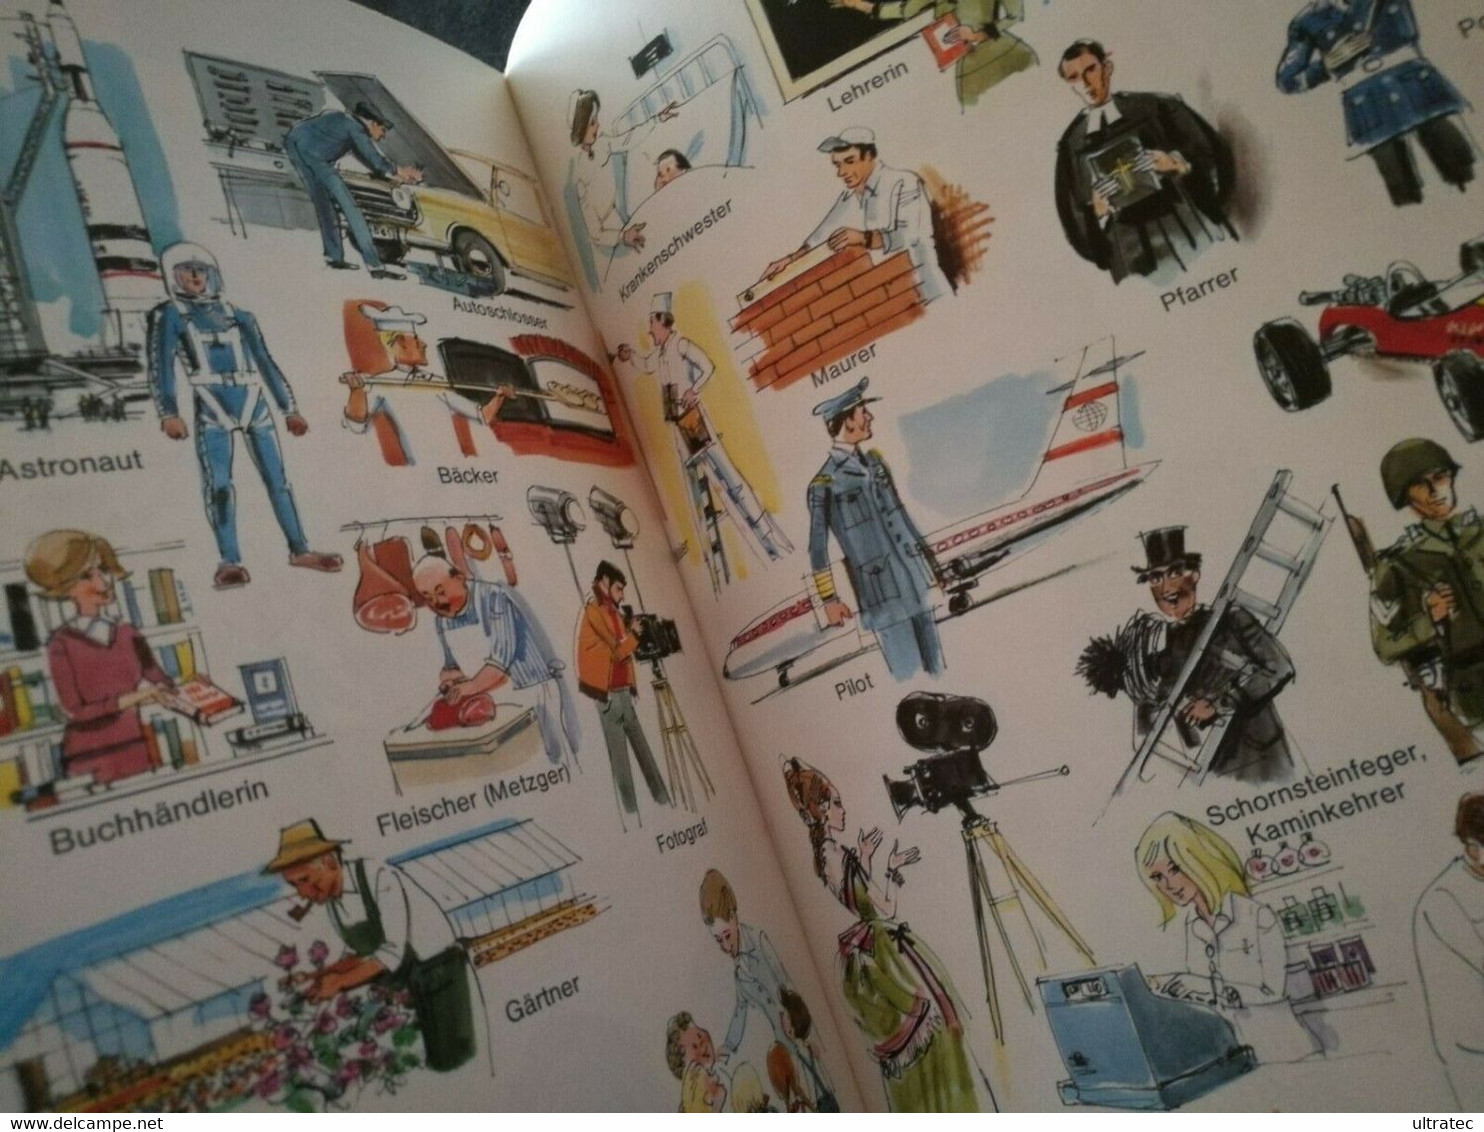 «Mein Buntes Bilderwörterbuch» Von Horst Lemke 70er Jahre Antikes Kinderbuch - Aventure